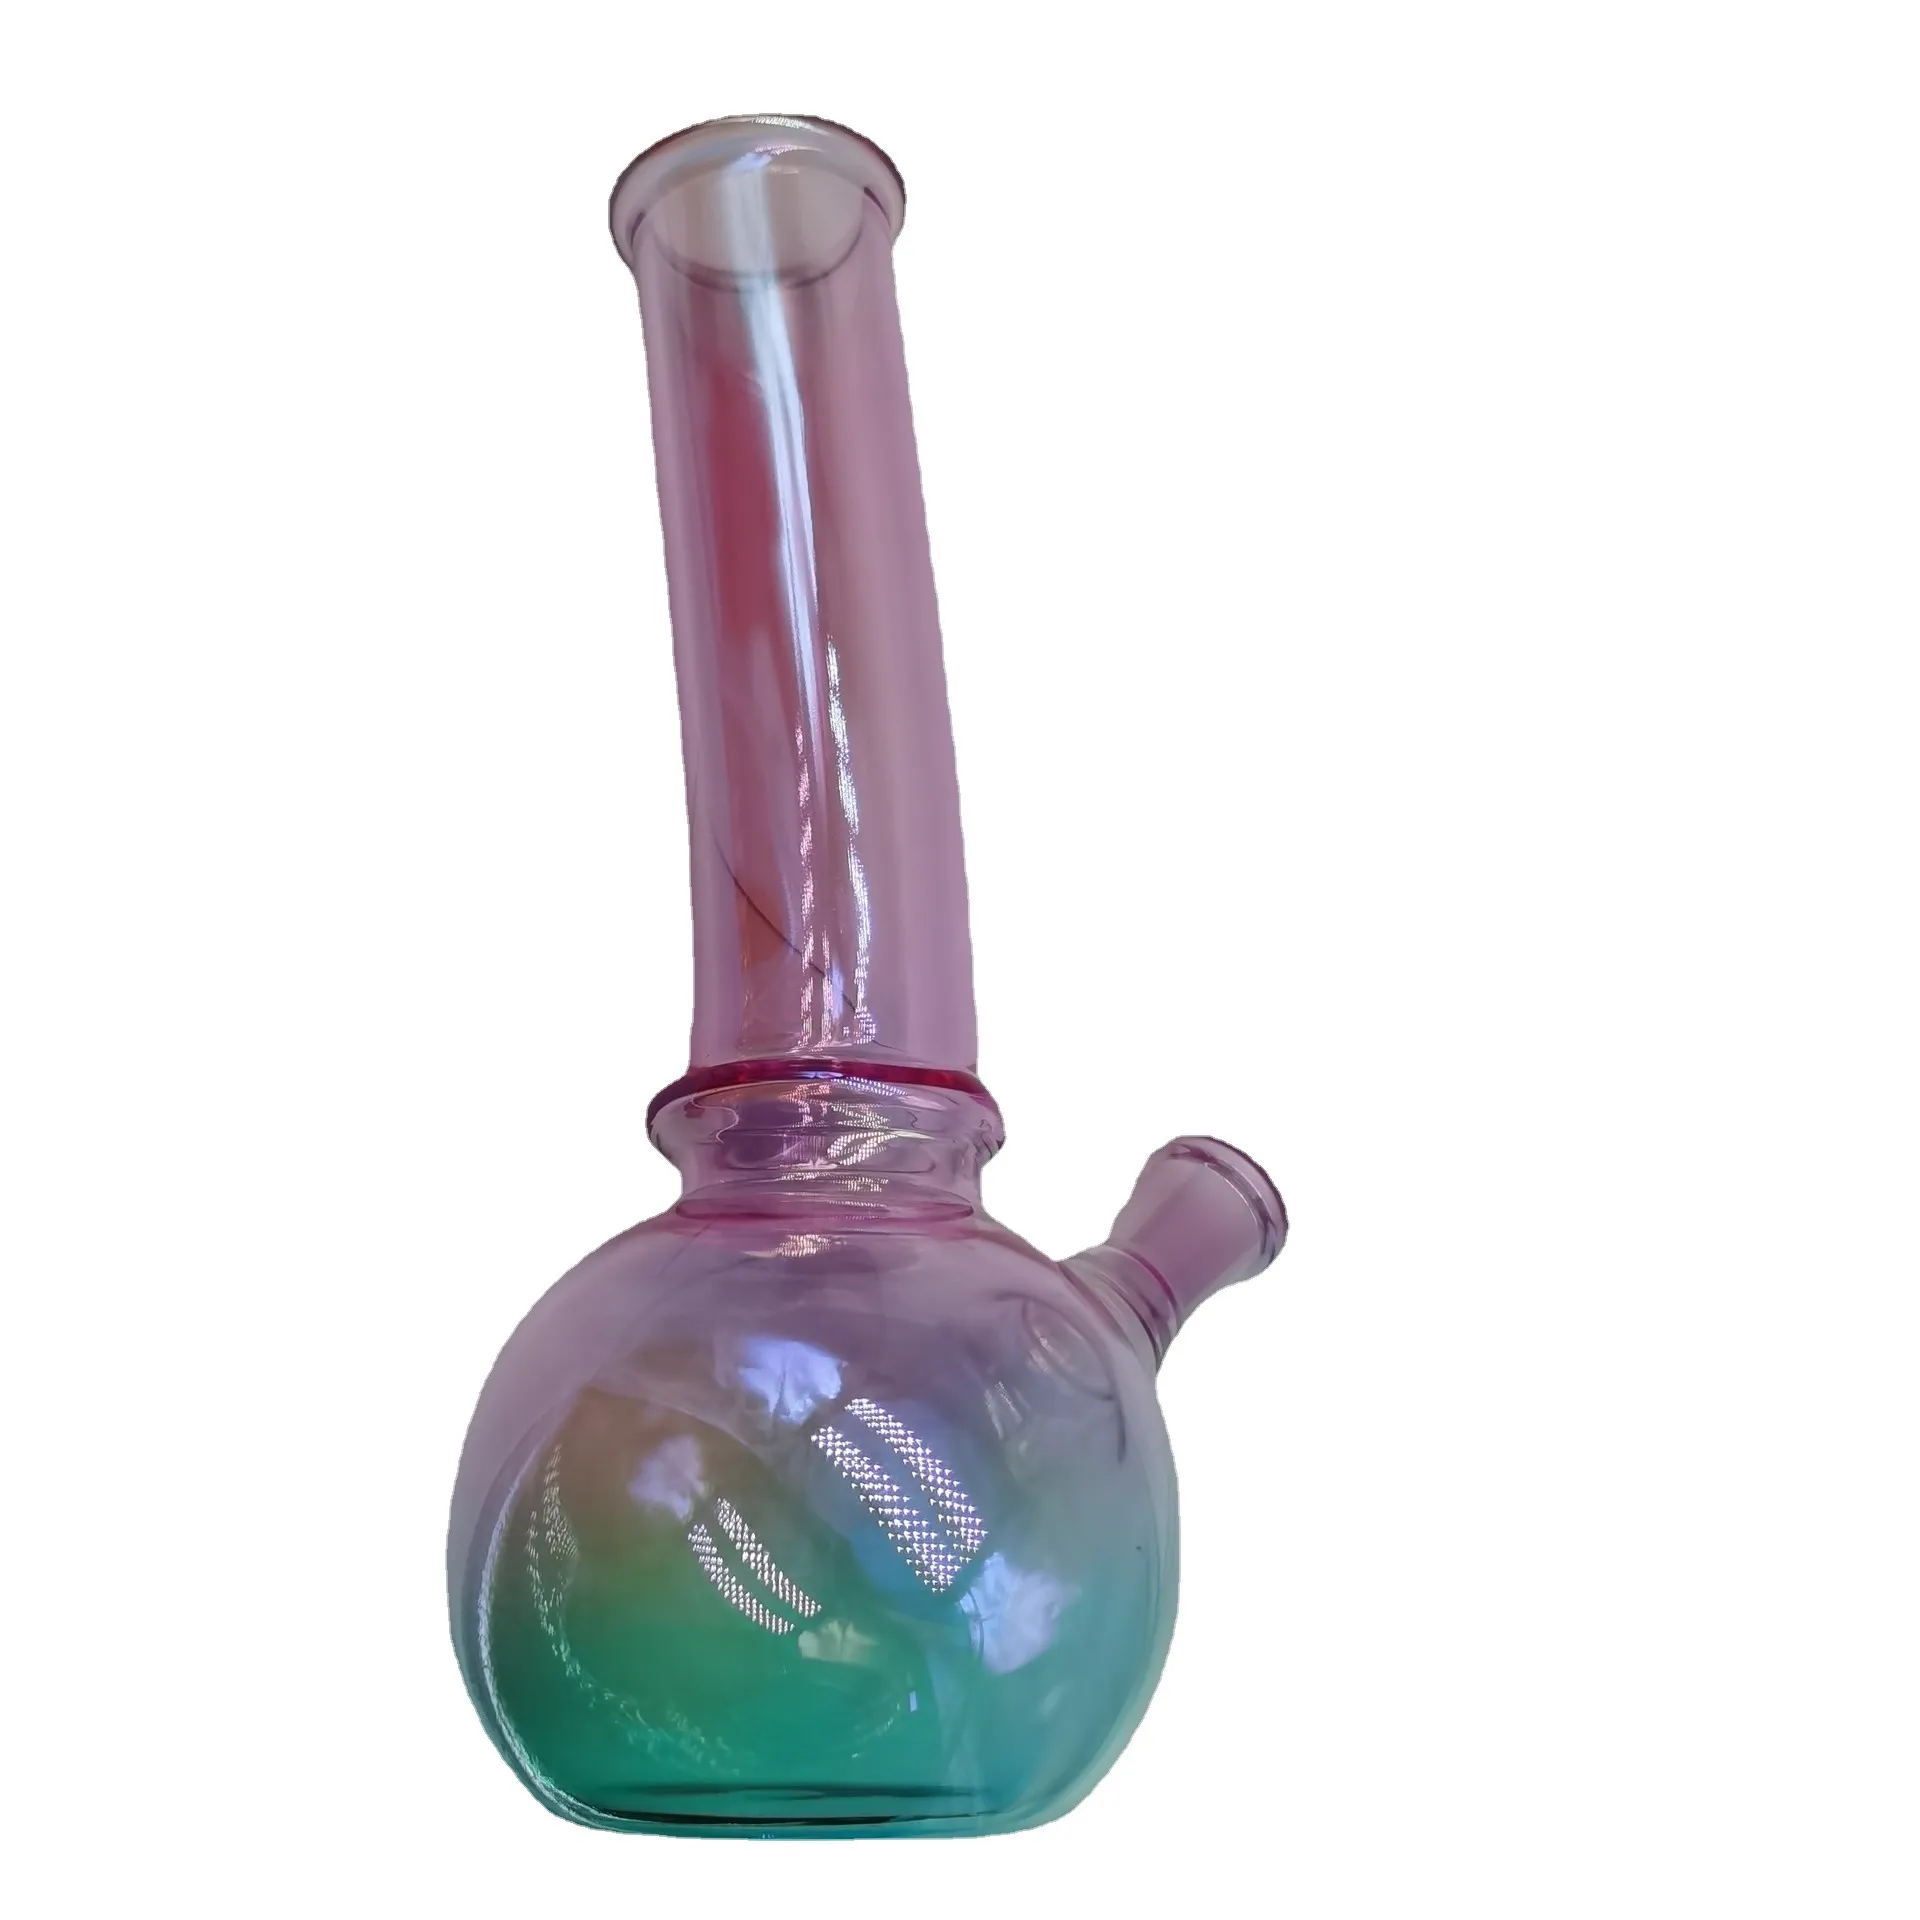 Unikalna kolorowa szklana pułapka na lodową hakh o grubości 4 mm Materiał Rurka Pełna wysokość; 9.8-calowy, bezpłatny: w środku i zewnętrznej formie   łuk głośnikowy